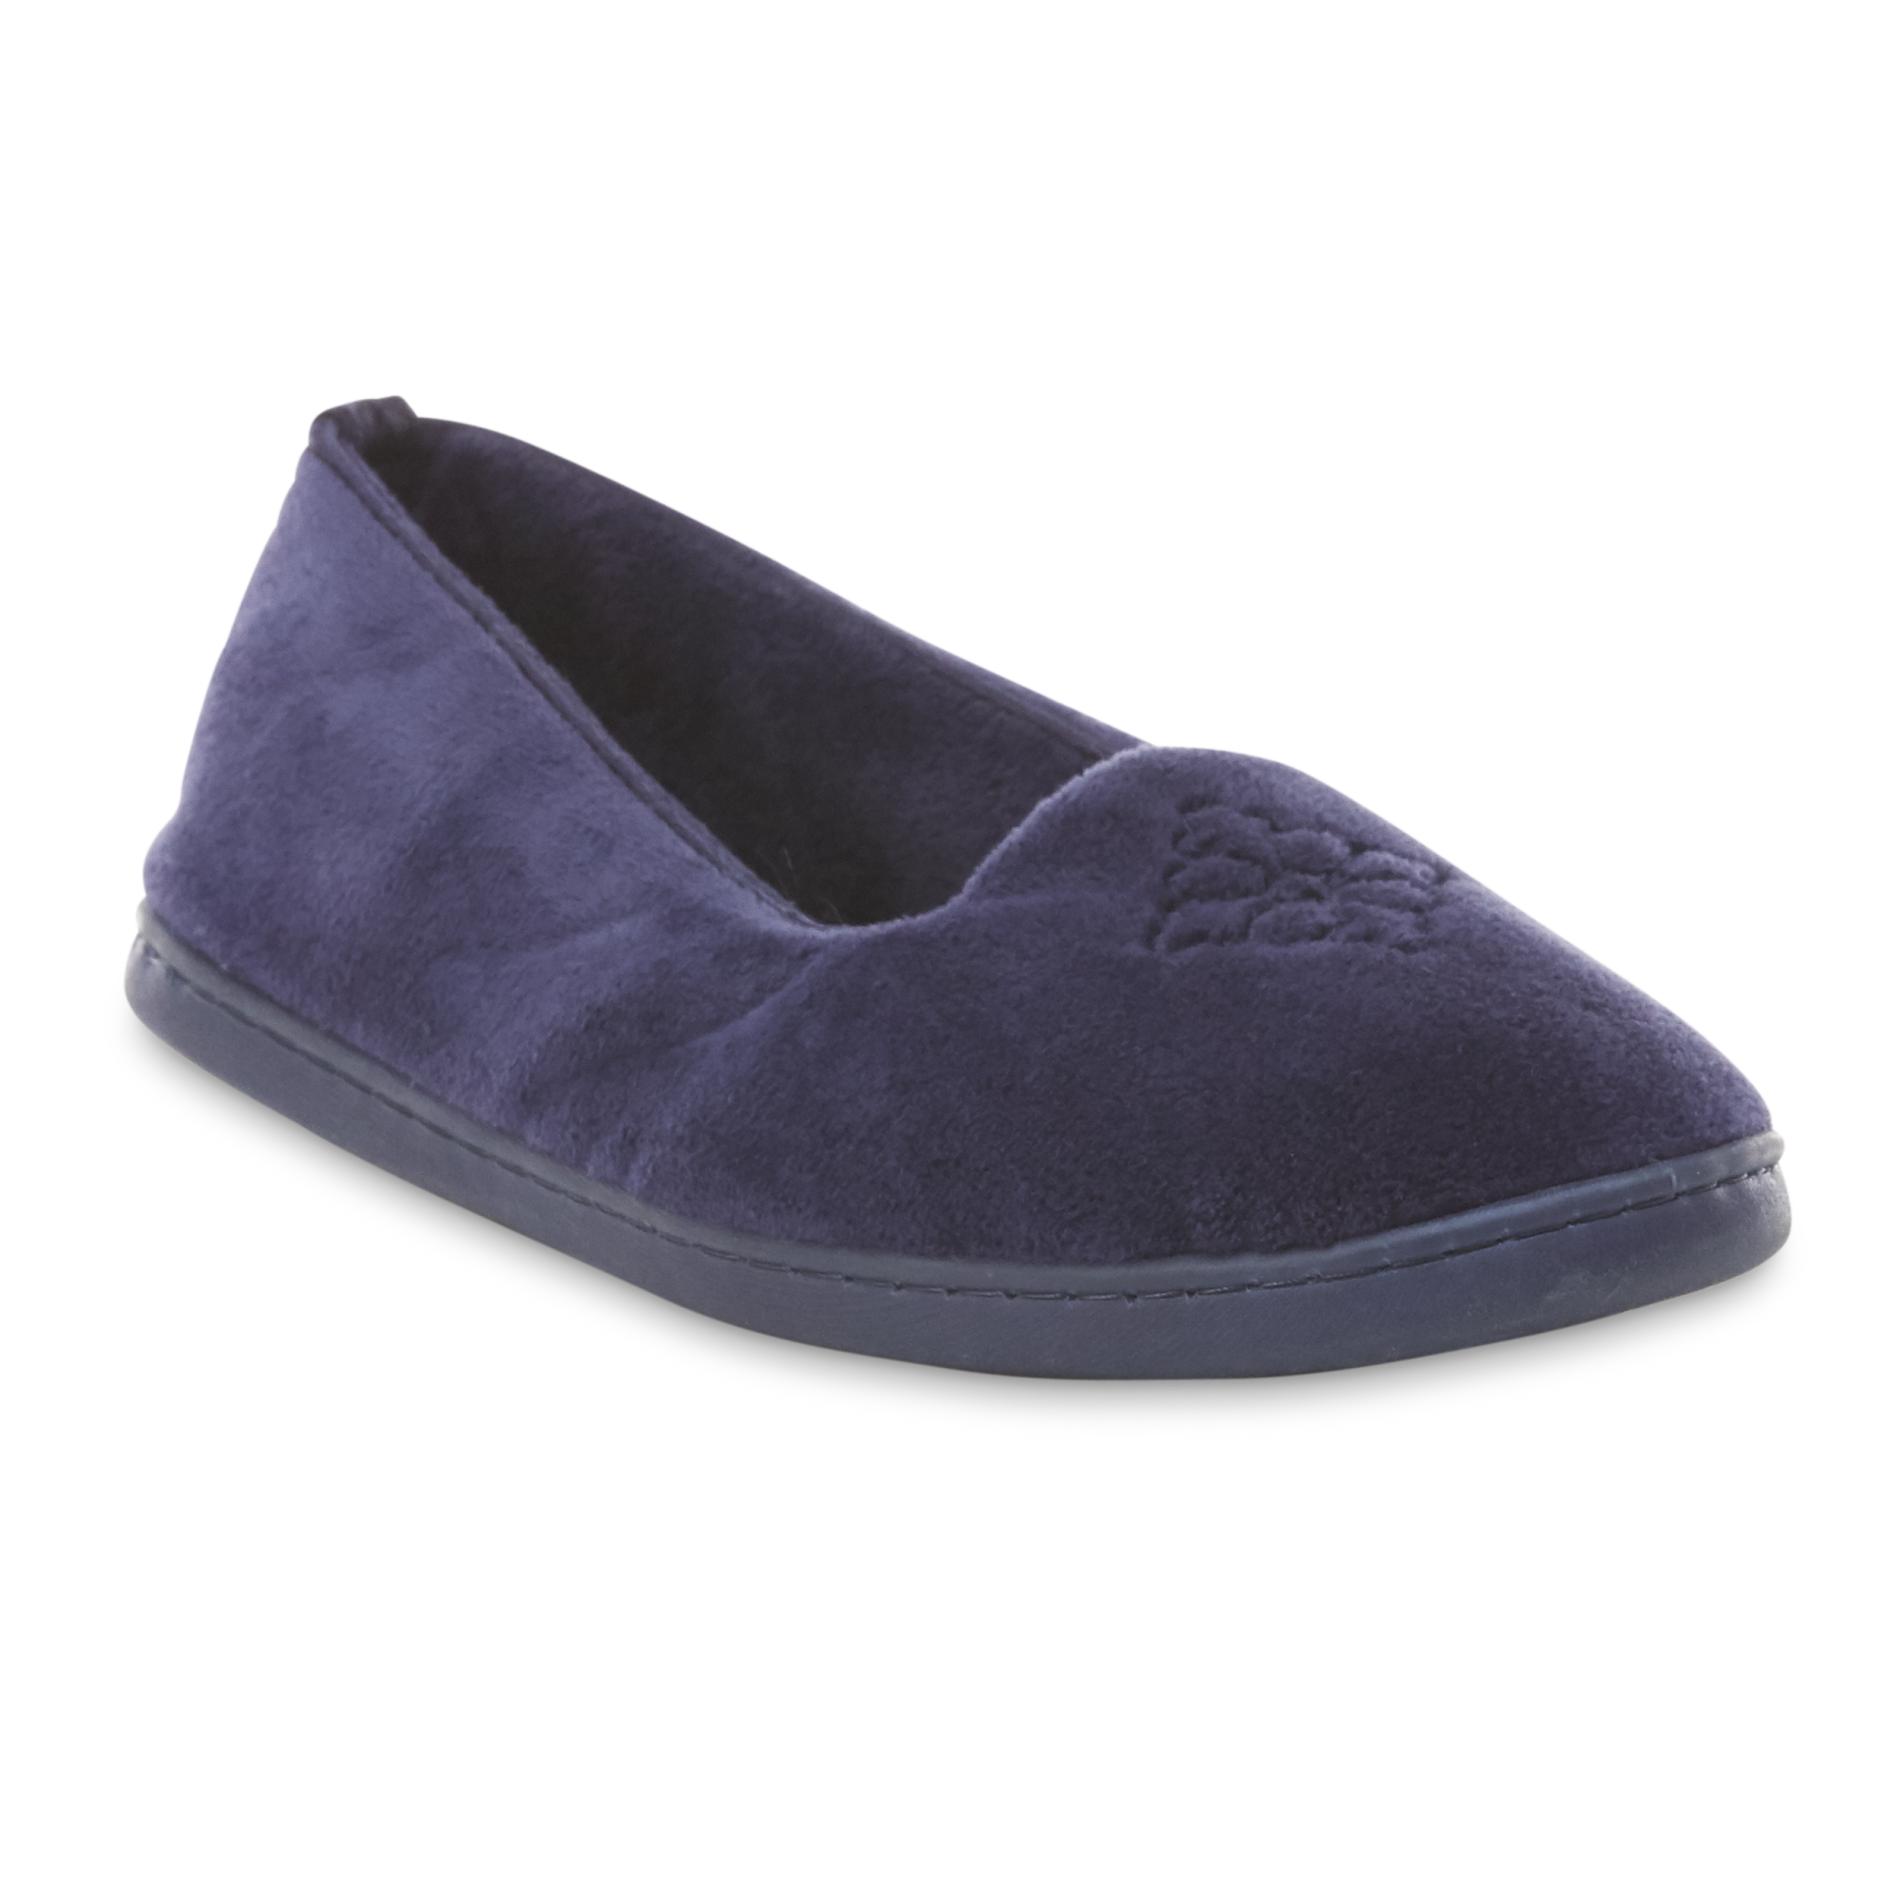 Blue Dearfoams Women's Slippers - Sears